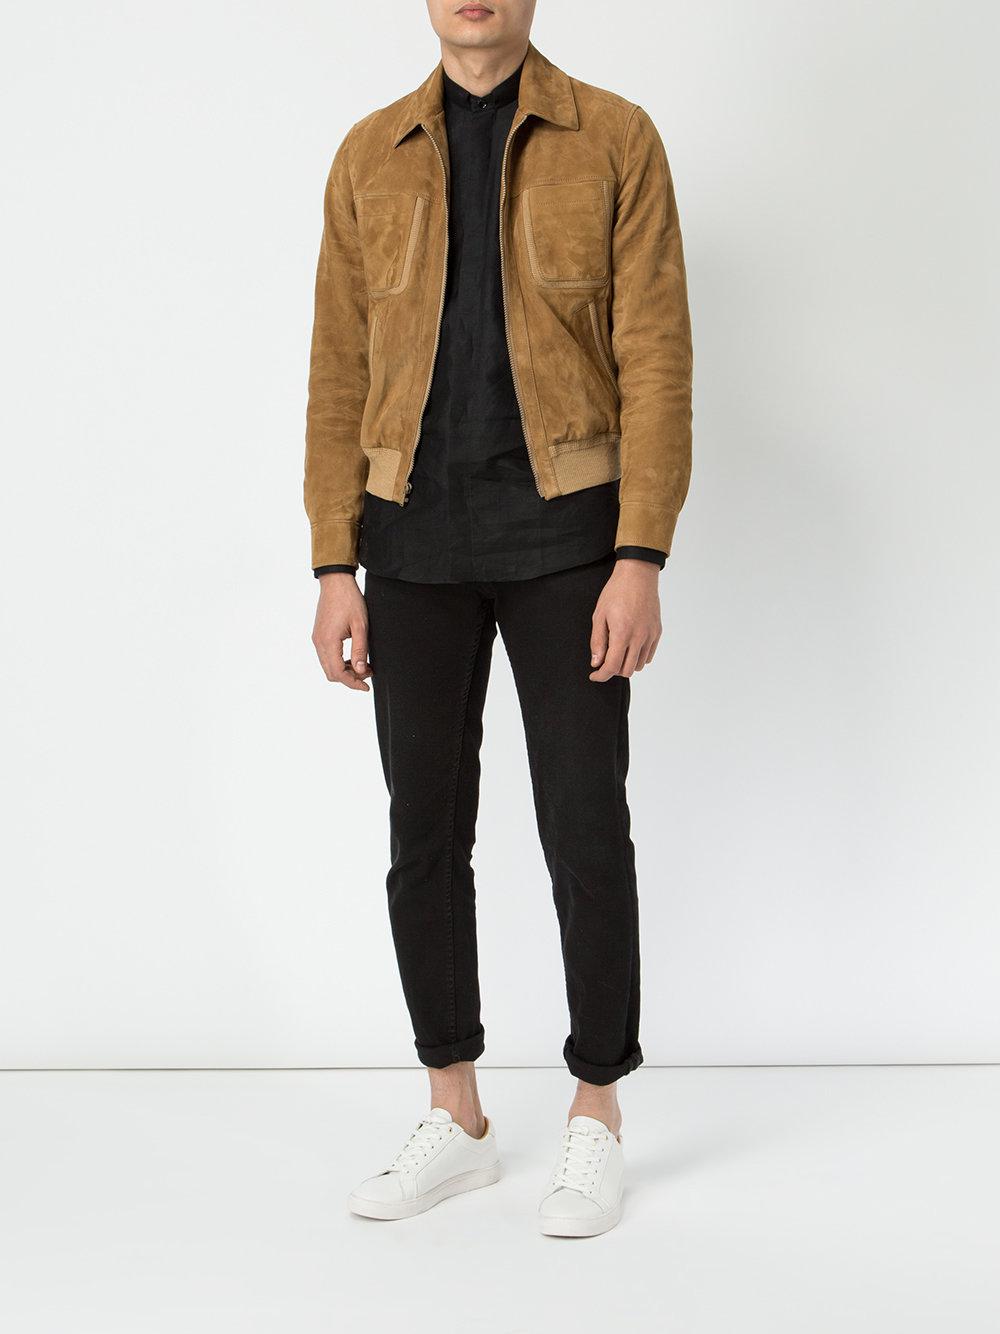 Saint Laurent Suede Harrington Jacket in Brown for Men | Lyst